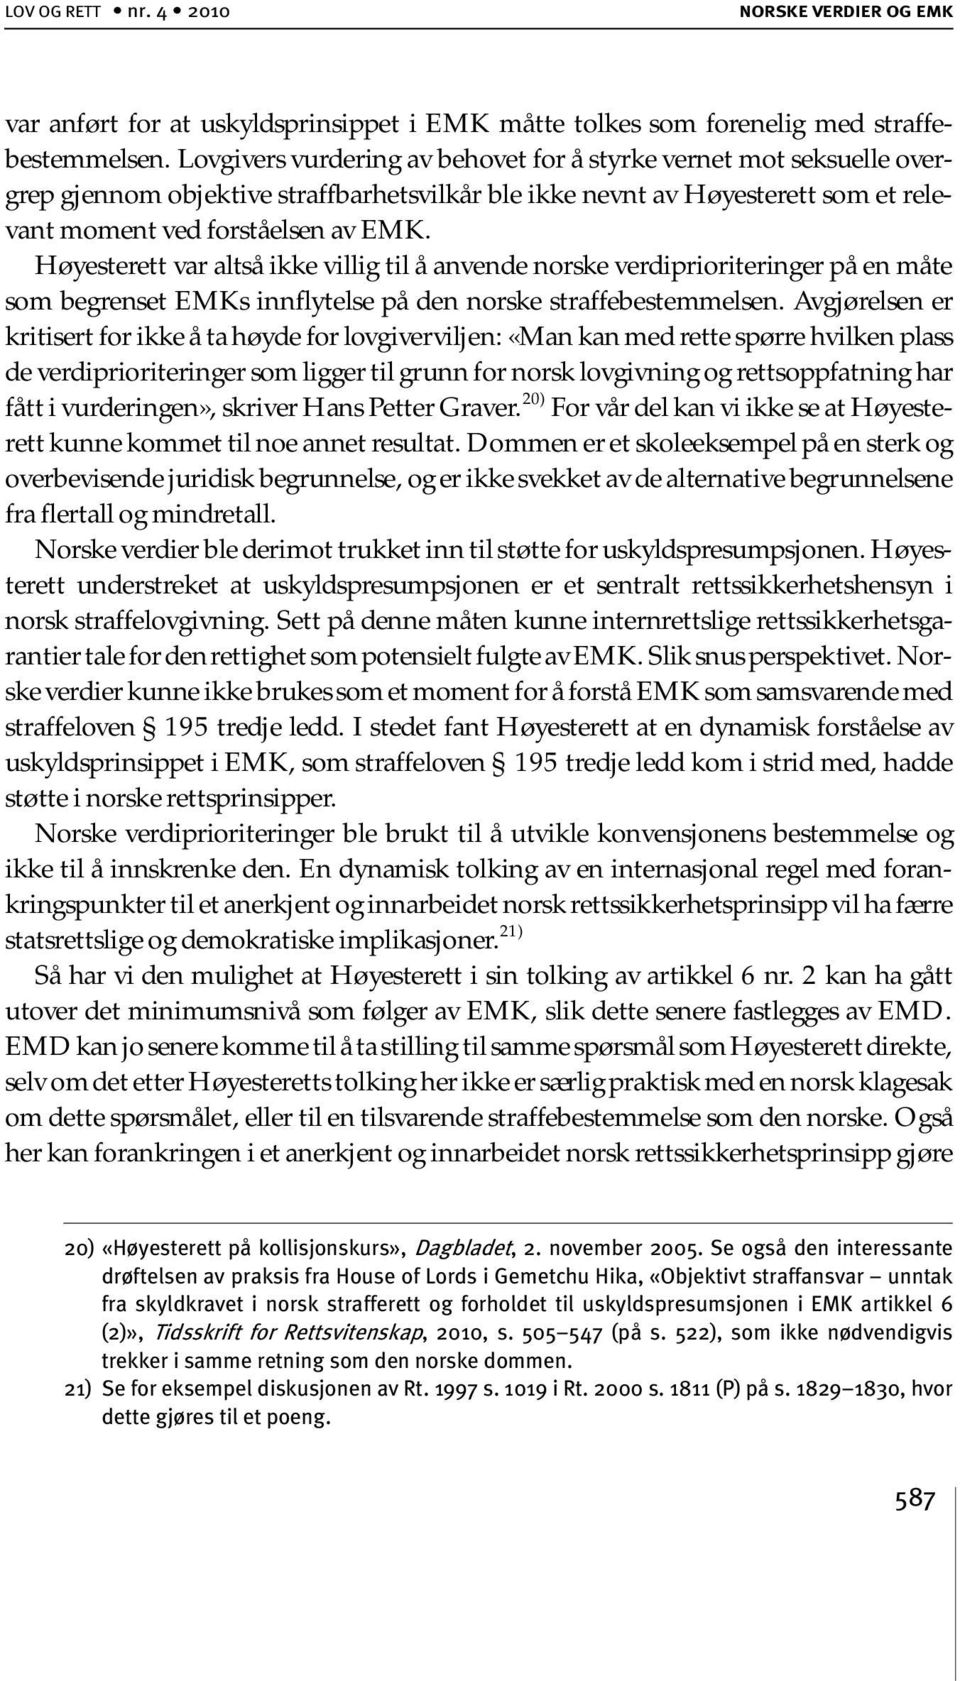 Høyesterett var altså ikke villig til å anvende norske verdiprioriteringer på en måte som begrenset EMKs innflytelse på den norske straffebestemmelsen.